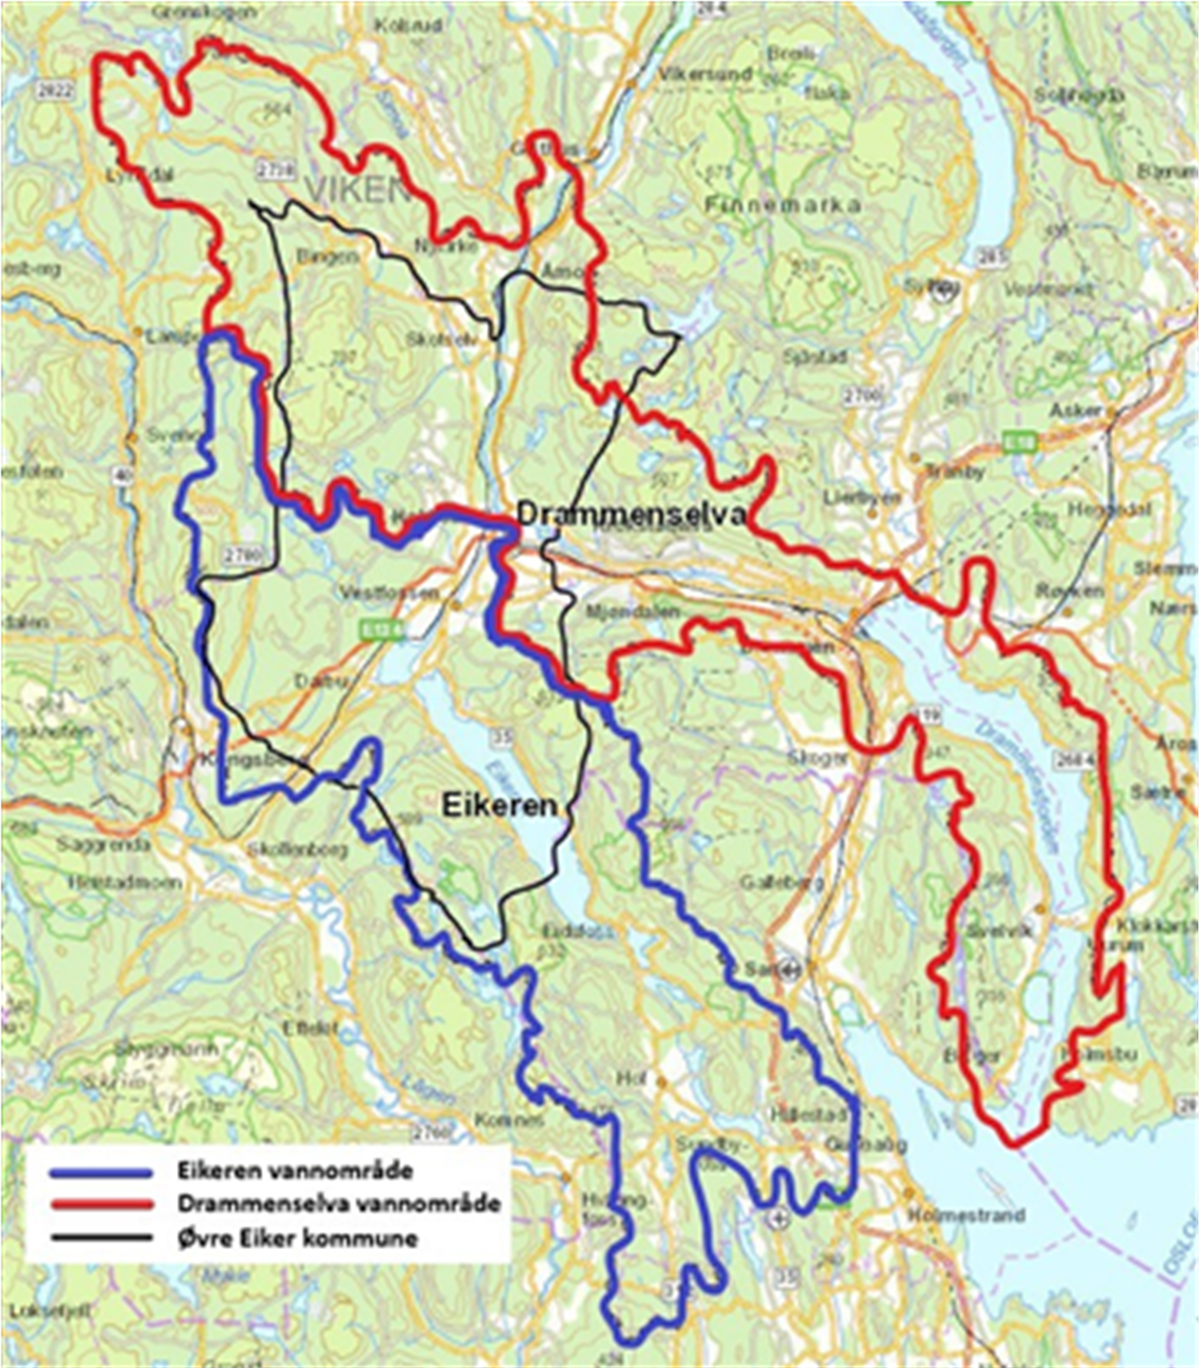 Kart som viser vannområder i Øvre Eiker - Klikk for stort bilde